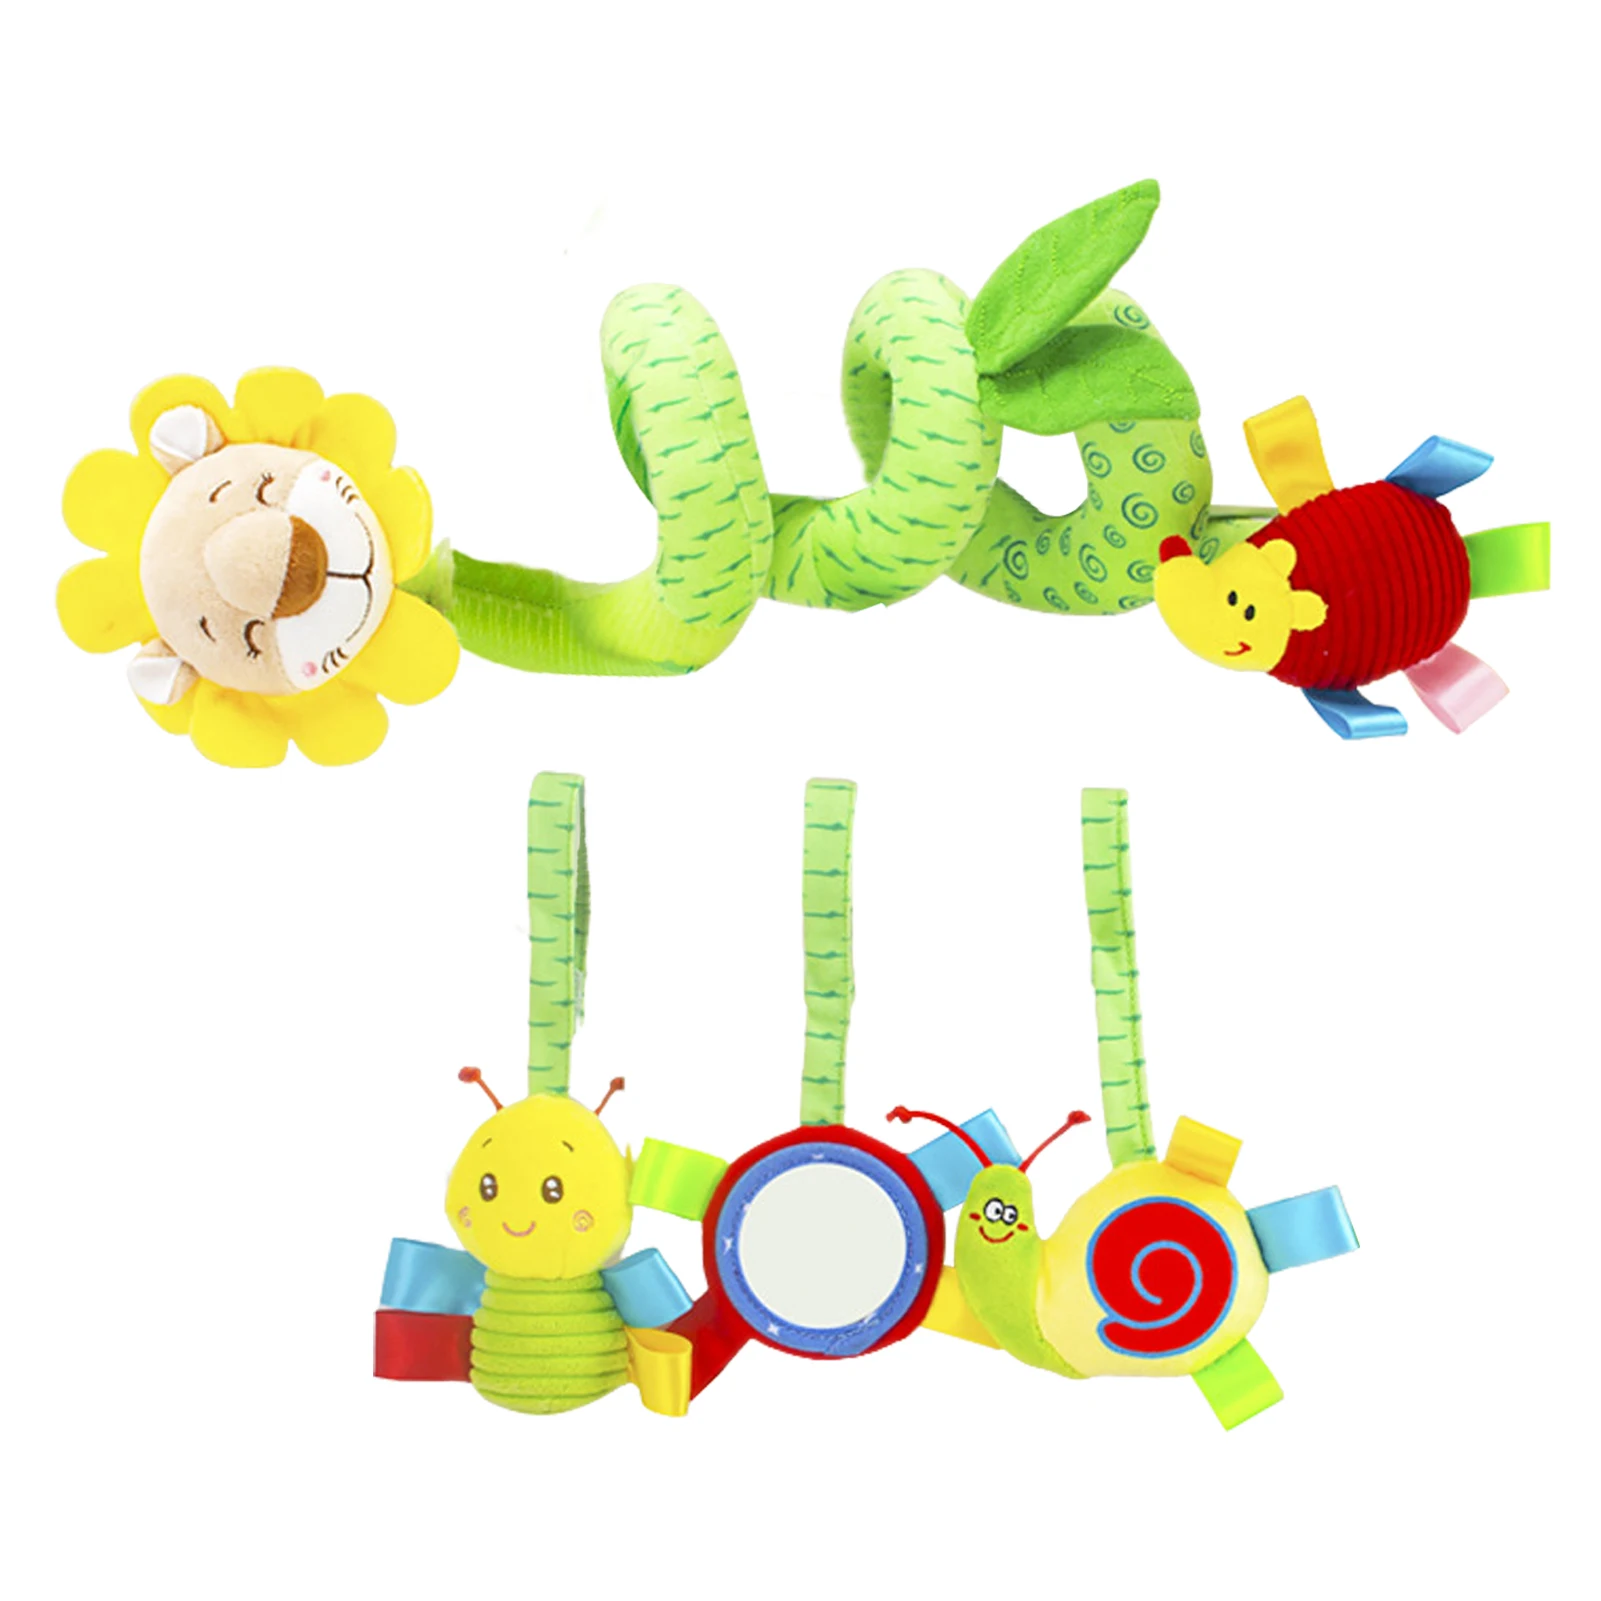 

Спиральная игрушка для детской кроватки, Цветные Висячие игрушки на спирали для автомобильных сидений, спиральные плюшевые игрушки для про...